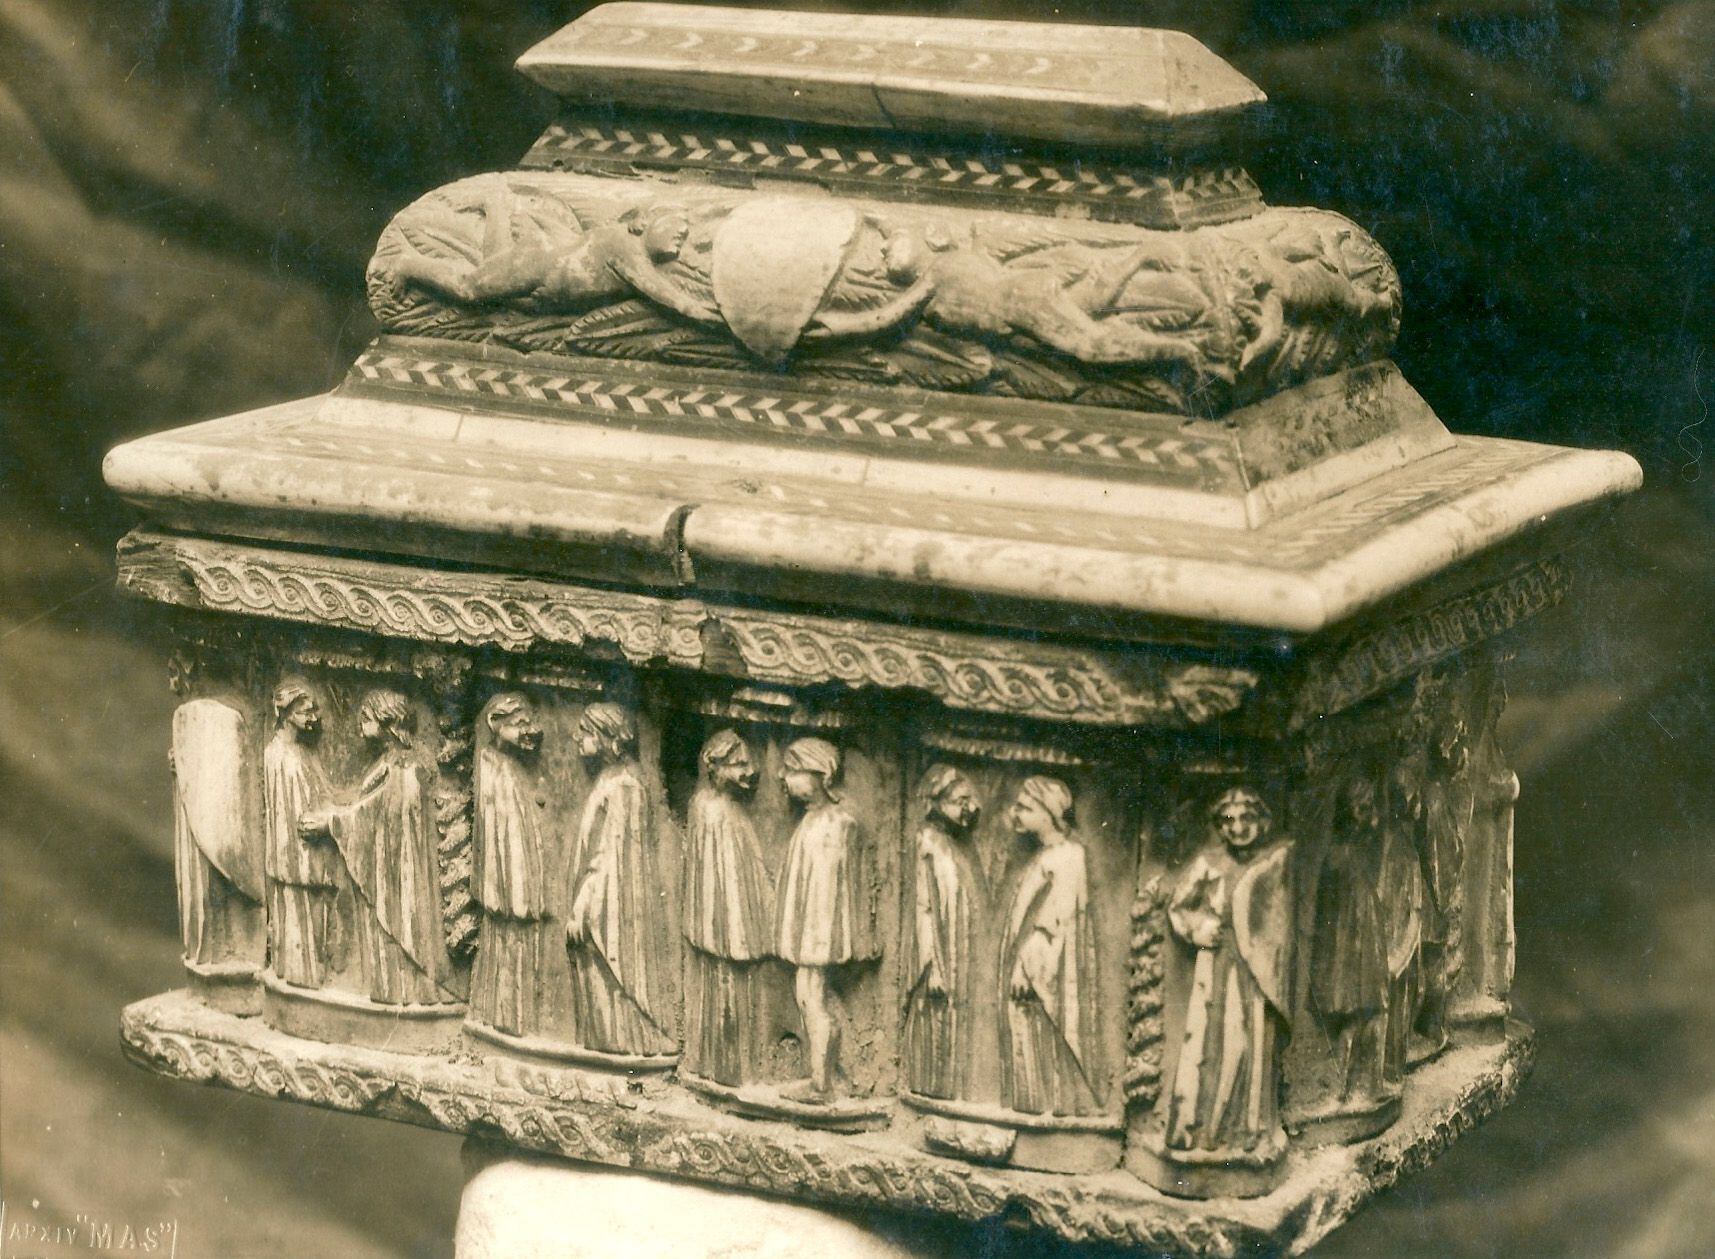 Arqueta litúrgica realizada en Génova en el siglo XVI de madera de ébano con 12 parejas de figuras mitológicas en hueso. Procede de Riudoms (Baix Camp) y no se recuperó tras el robo de 1980 de Erik el Belga.